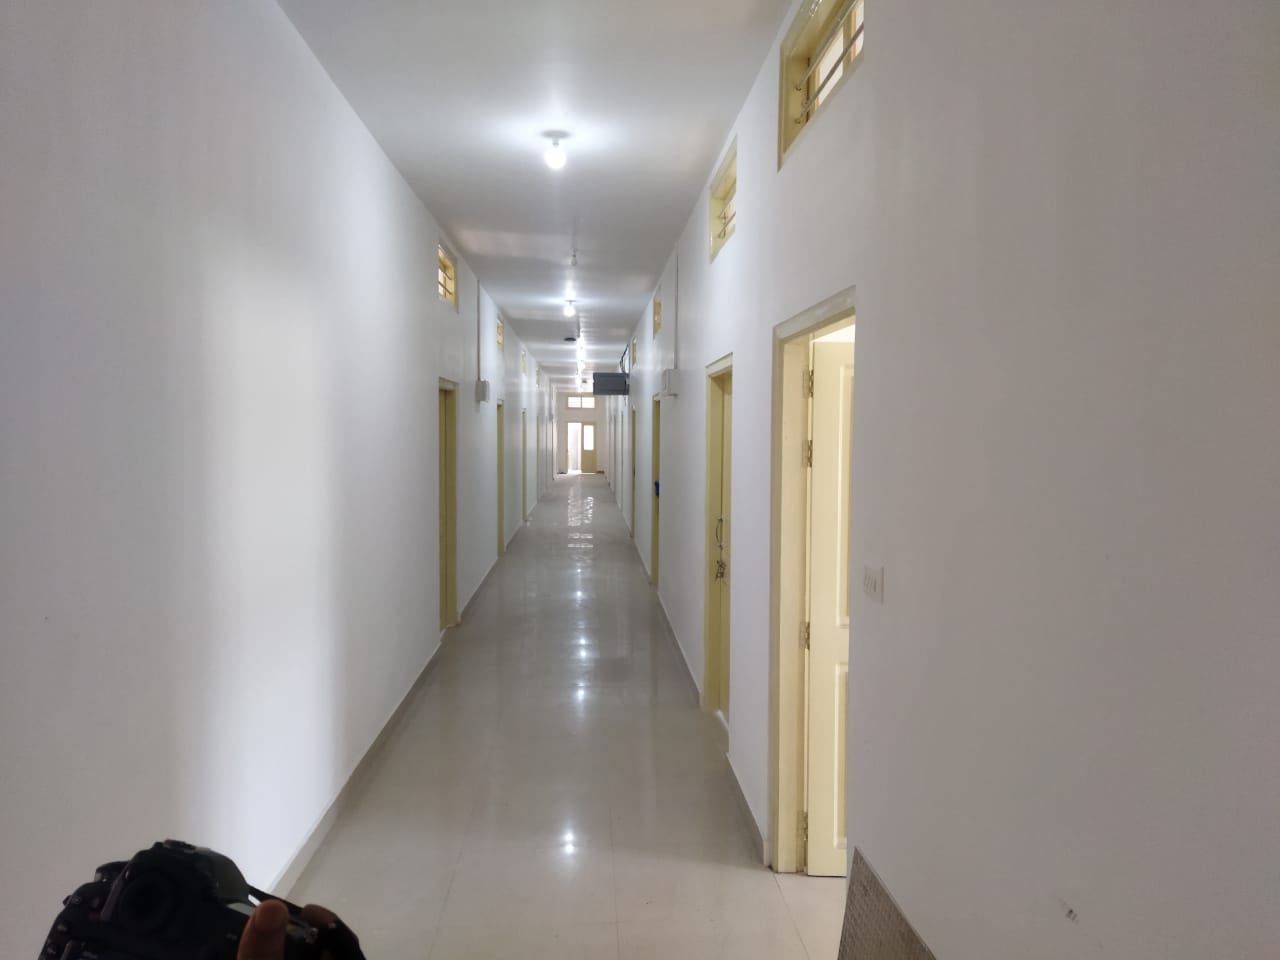 Corridor of Hostel Block